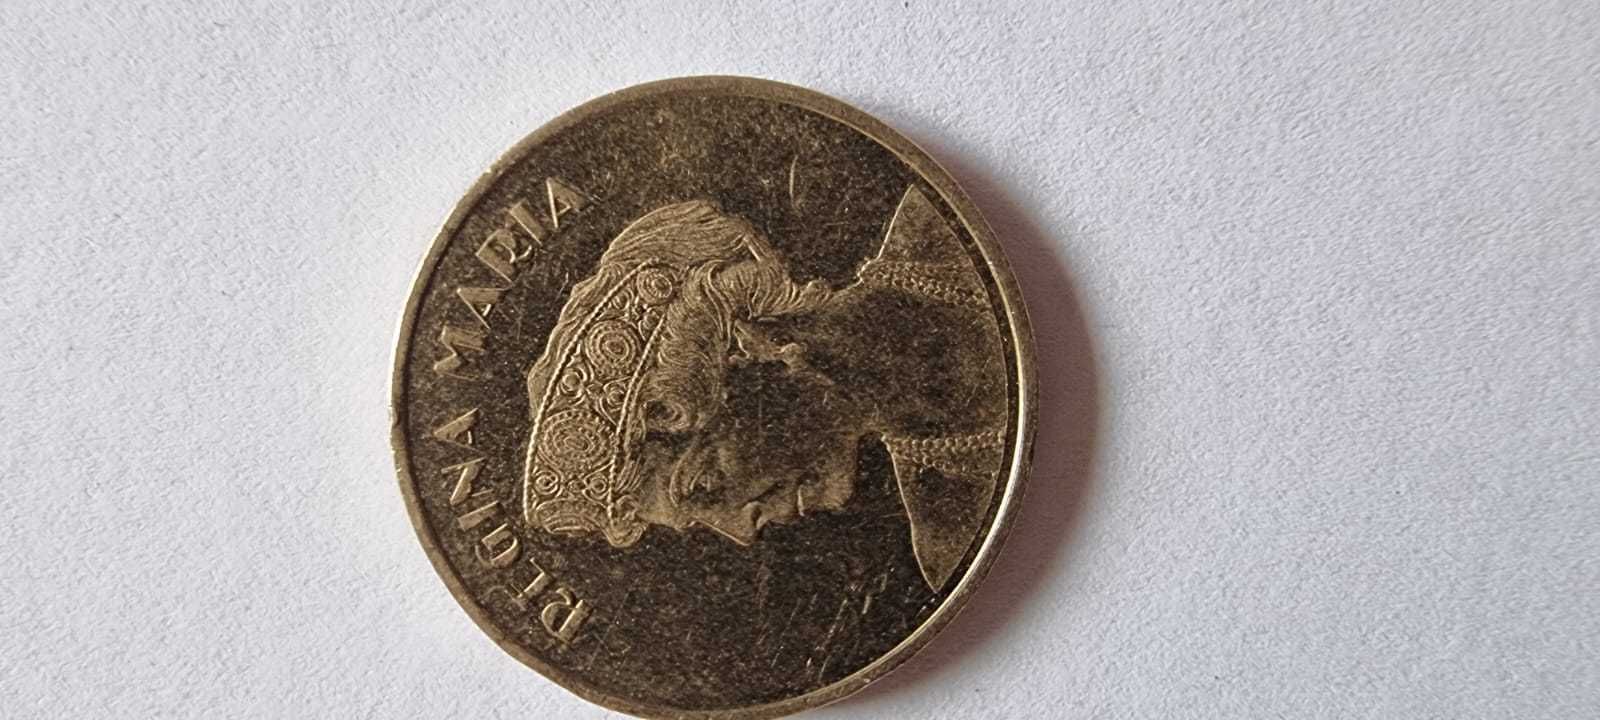 Vanzare colectie de monezi vechi